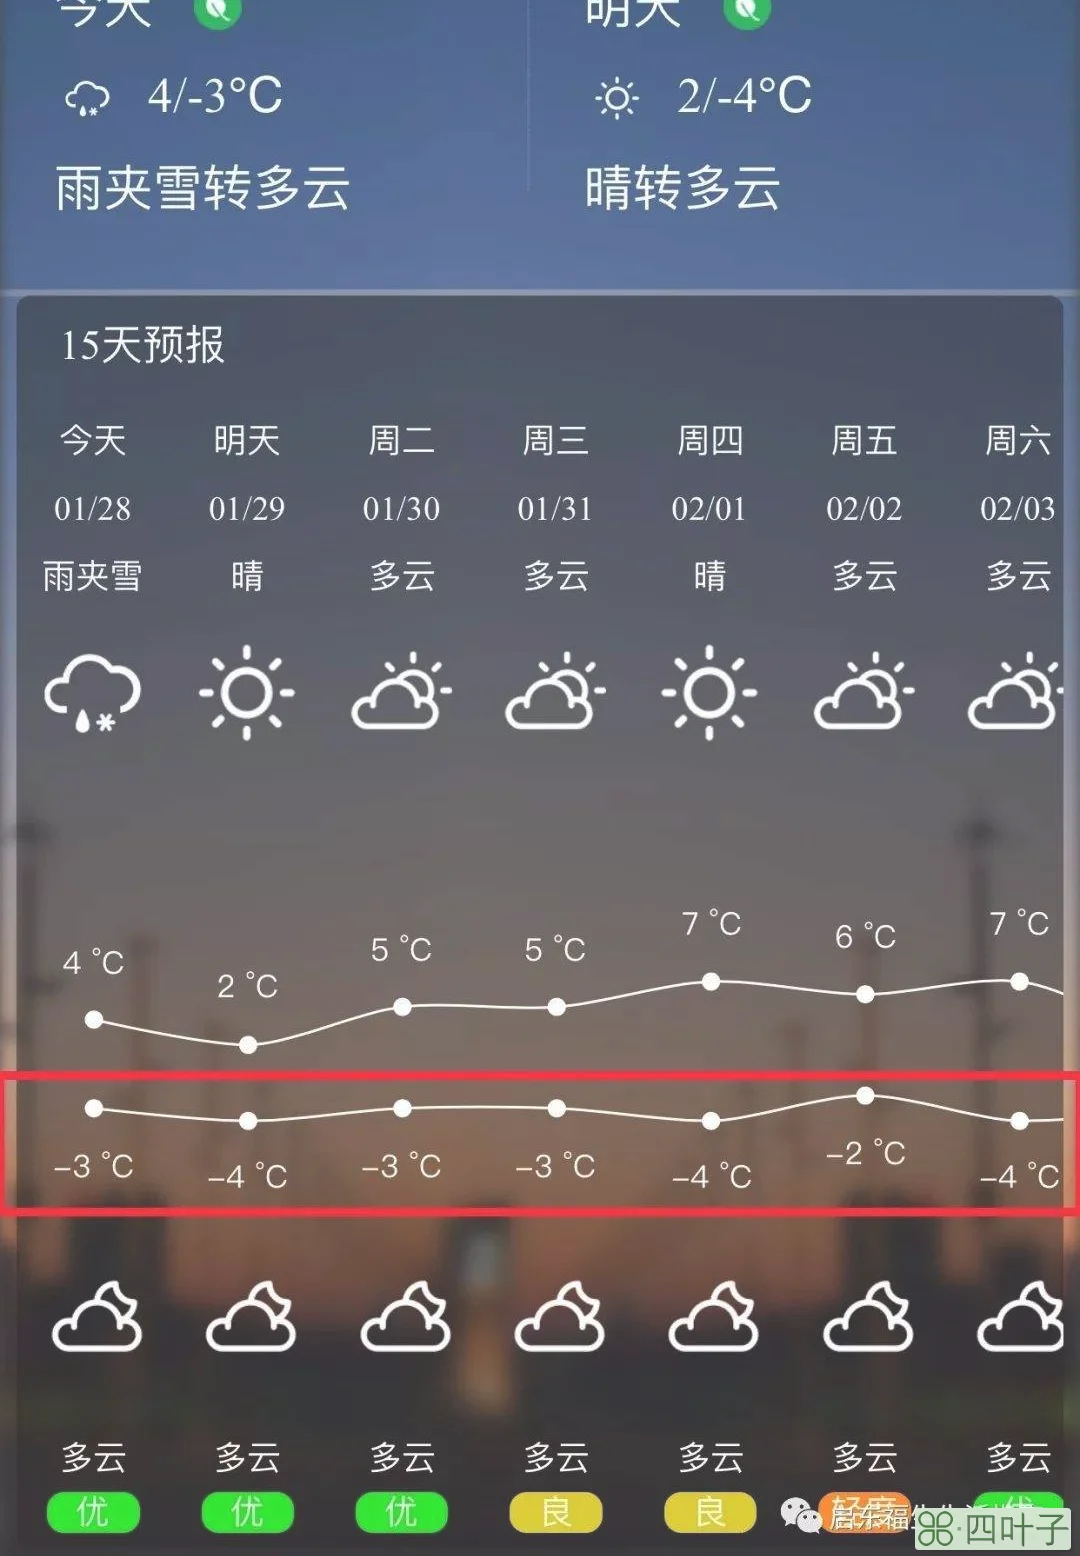 上海天气40天预报正确上海天气40天预报正确的是